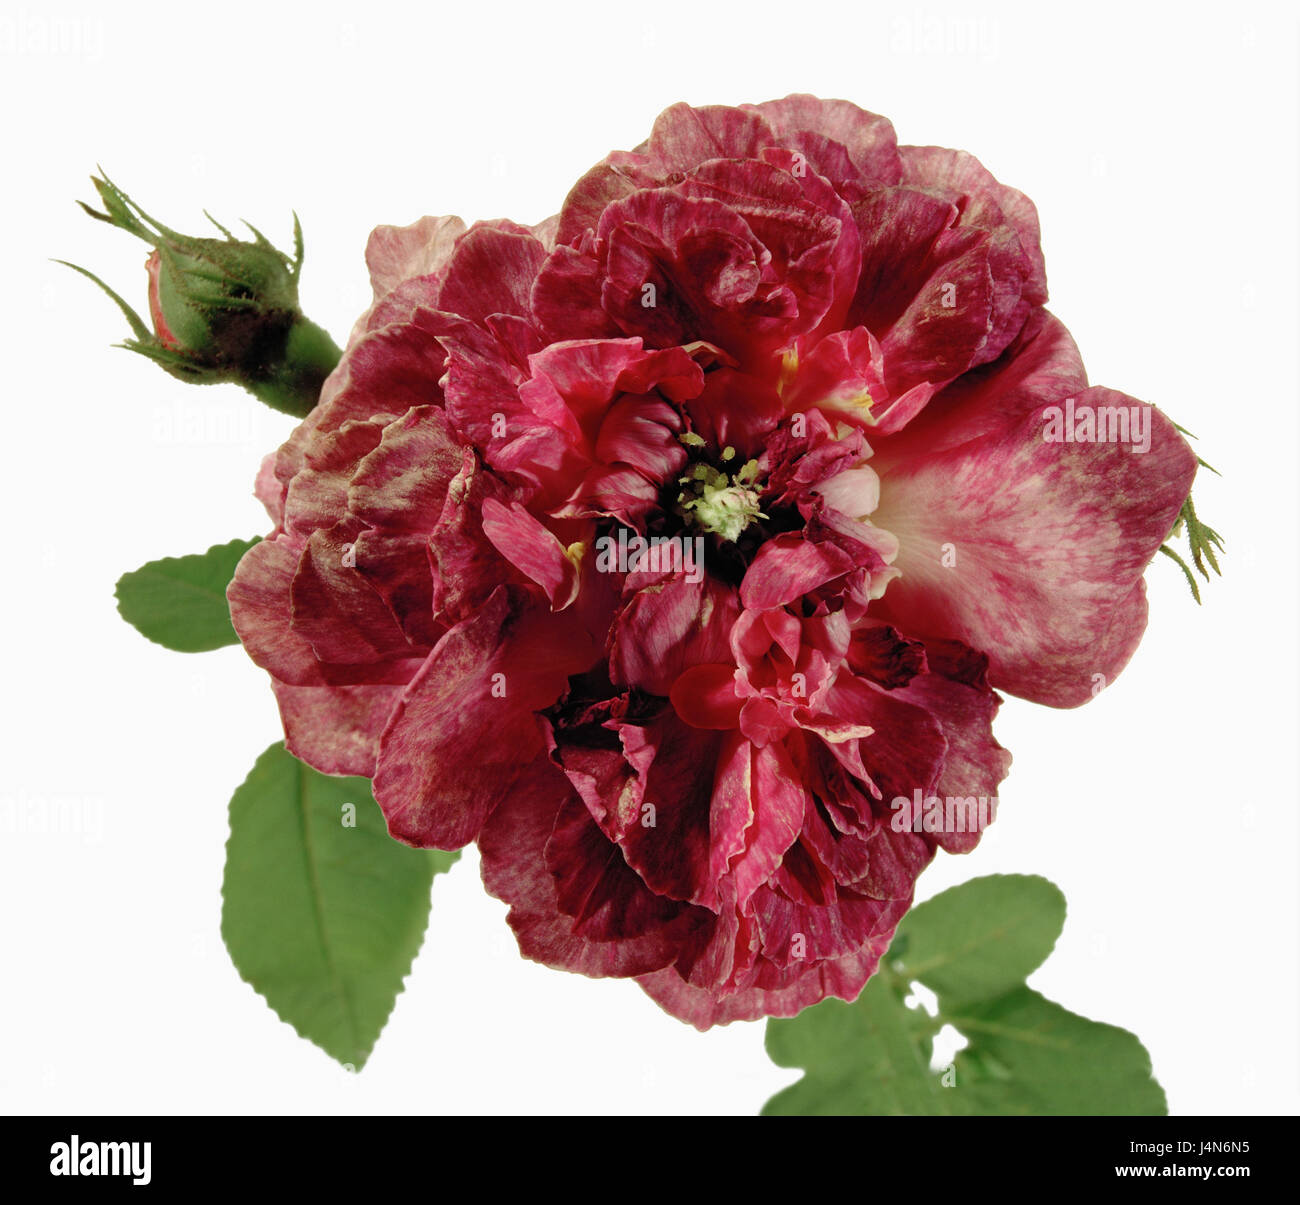 Rose, Name: 'Rinde von den Jardins', Dissektion Gallicanae, Gallica-Rosen, Züchter: Guillot Fils, Frankreich, im Jahre 1872 Stockfoto